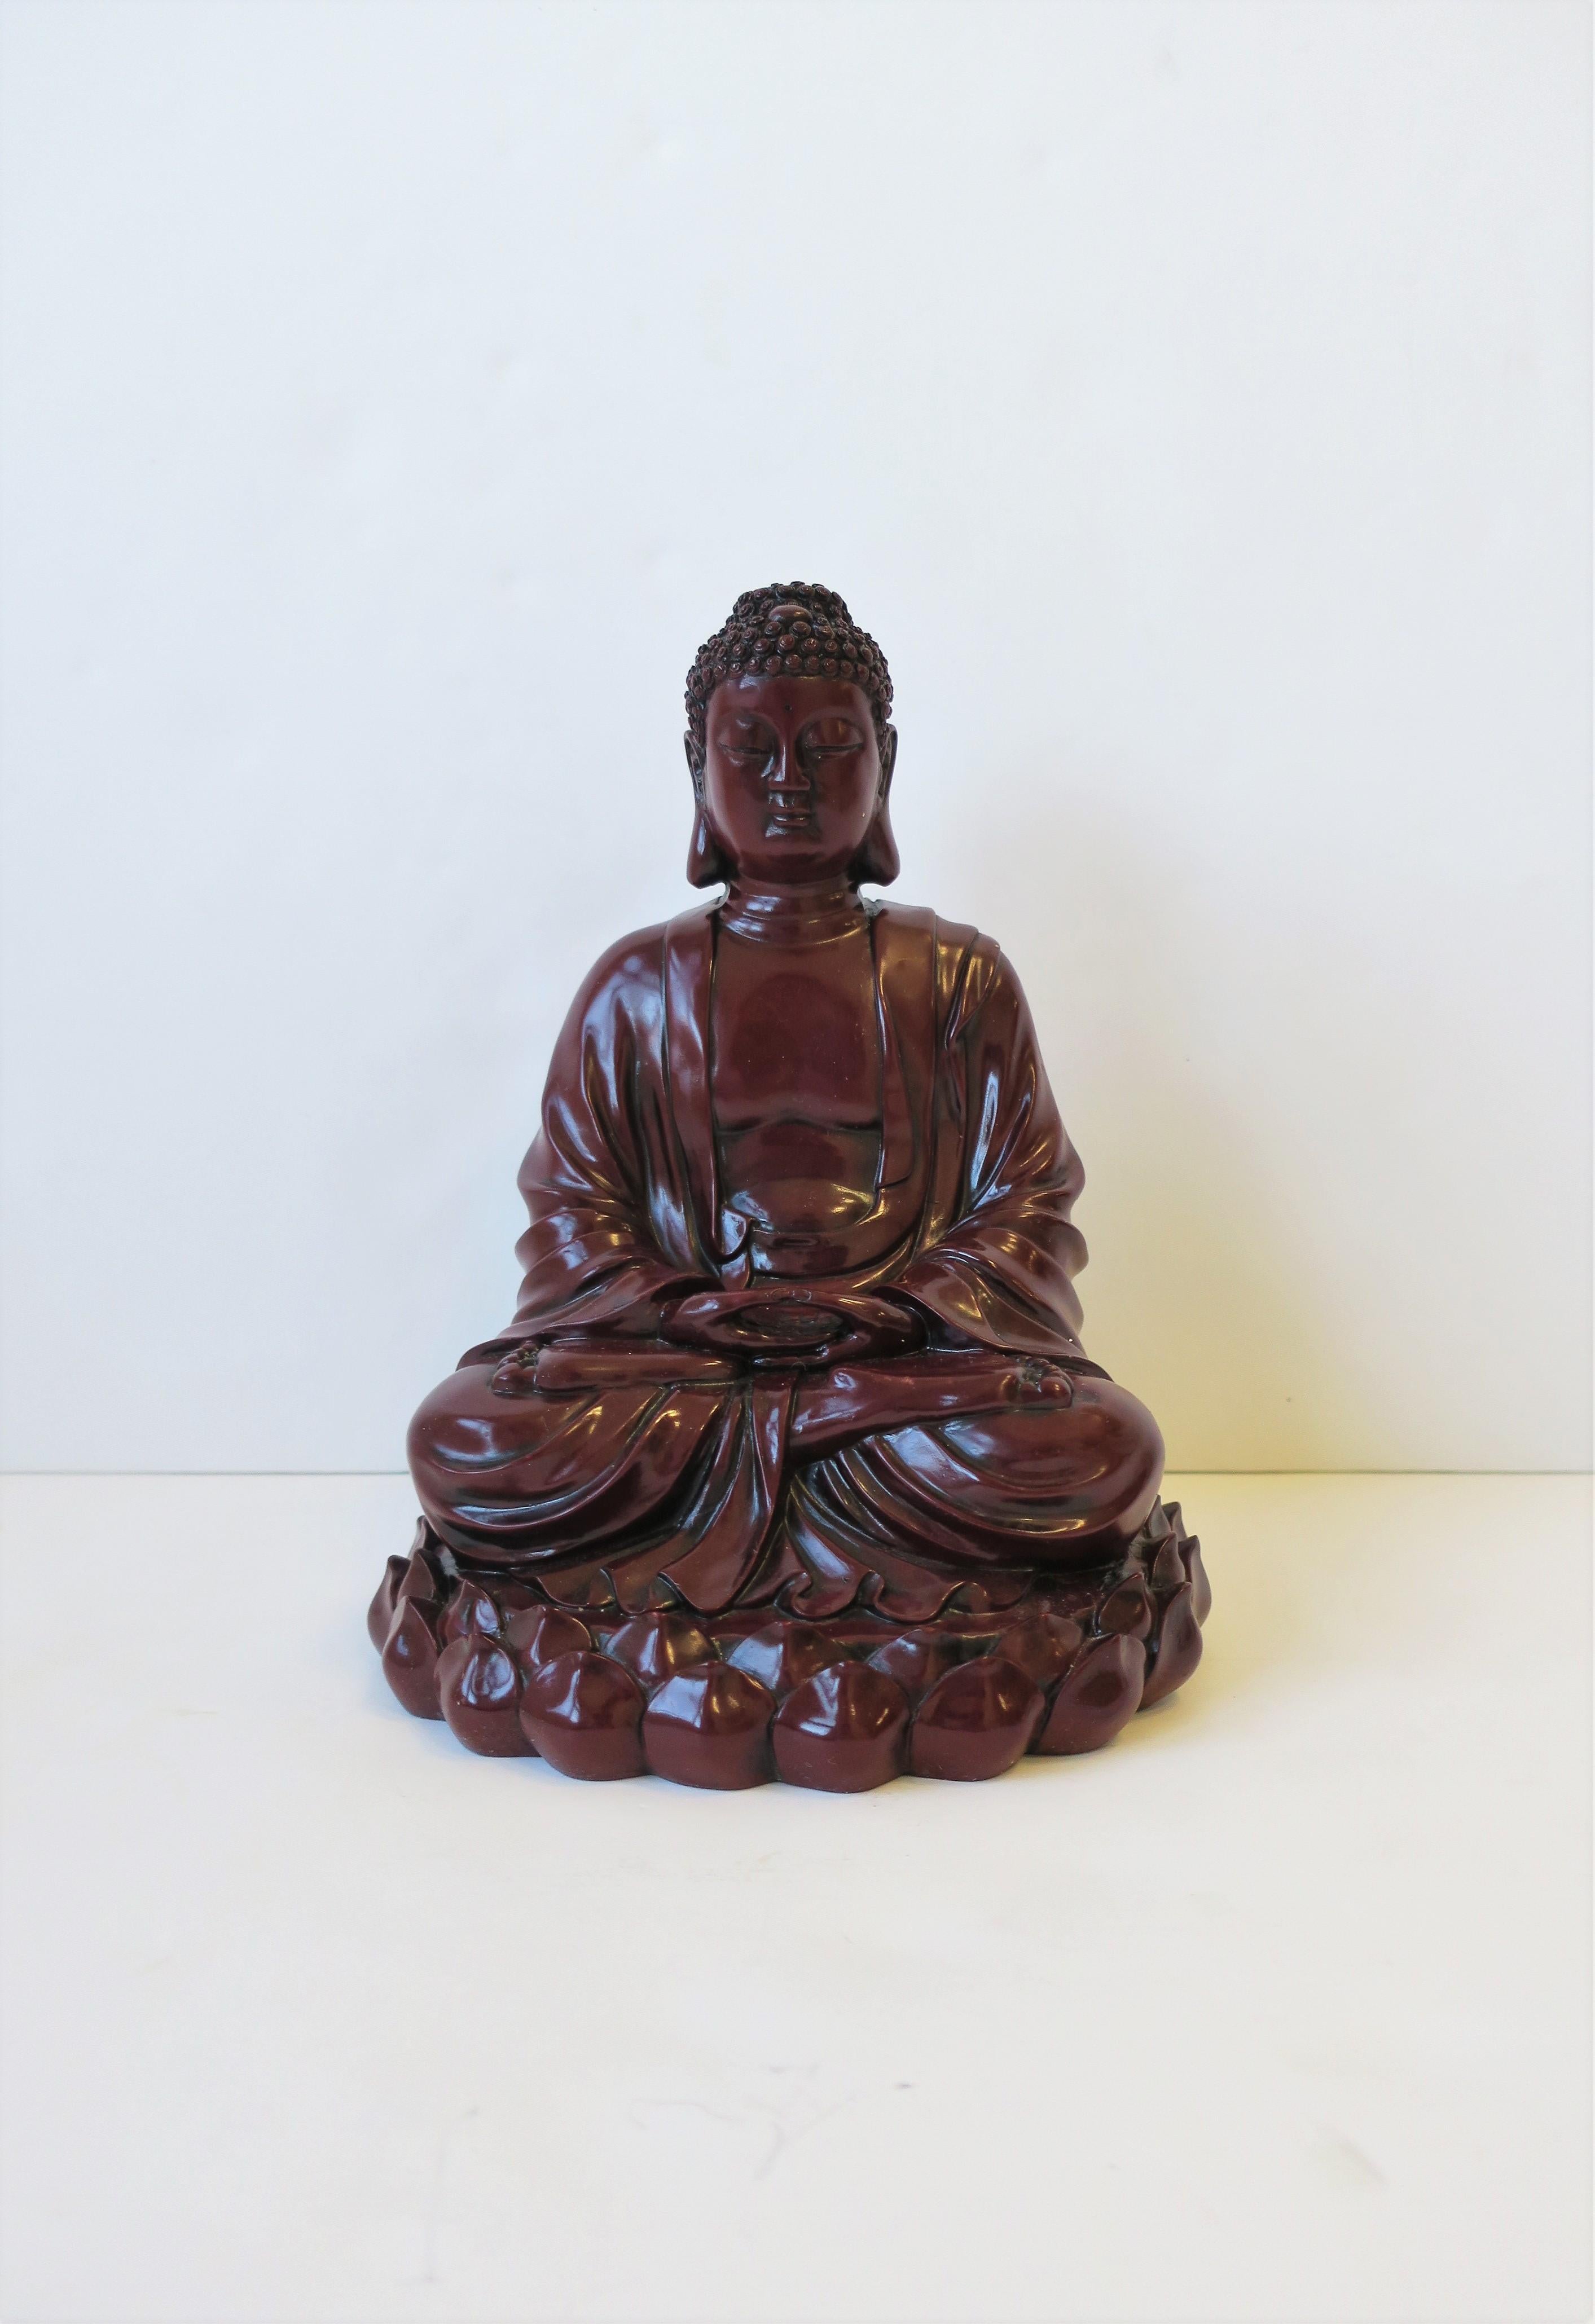 Beachtliches Dekorationsobjekt aus dunkelrotem, bordeauxfarbenem Harz, sitzende Buddha-Statue, ca. Ende des 20. Jahrhunderts. Dieser Buddha ist relativ groß und trägt ein Gewand in sitzender, meditierender Position mit einem Lotusblattmuster um die